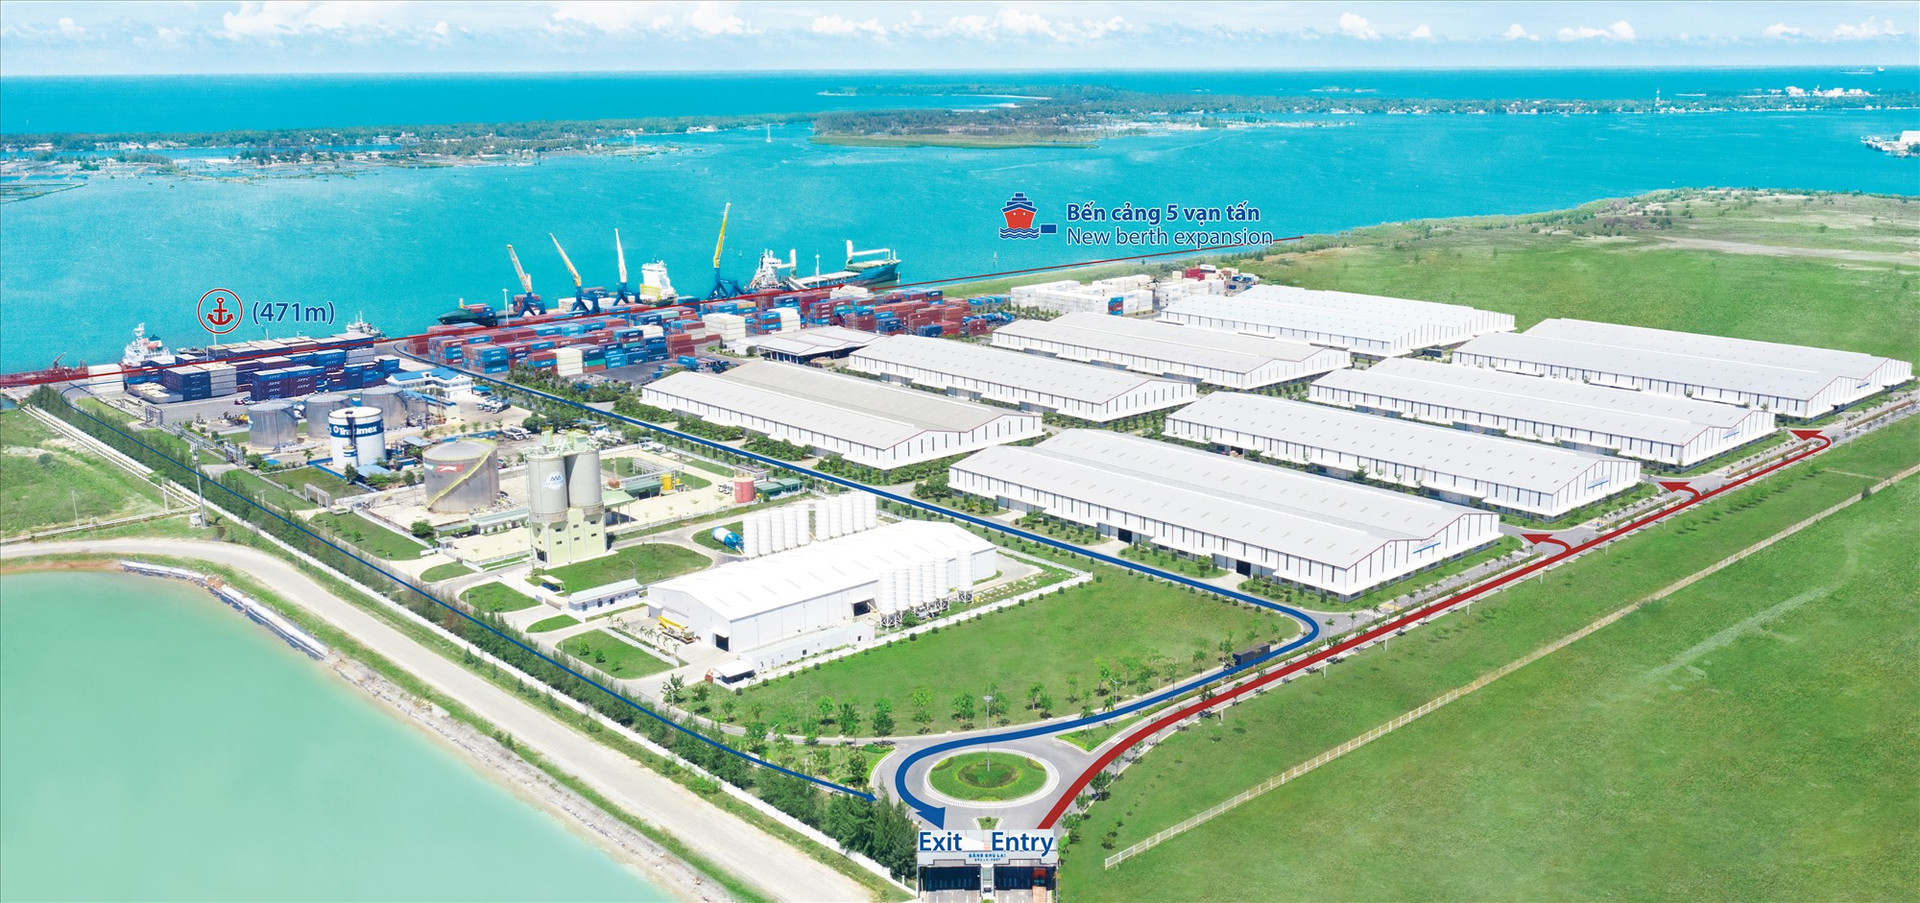 Cảng Chu Lai đang từng bước xây dựng bến Cảng 5 vạn tấn thực hiện mục tiêu trở thành cửa ngõ giao thương của miền Trung, Việt Nam.